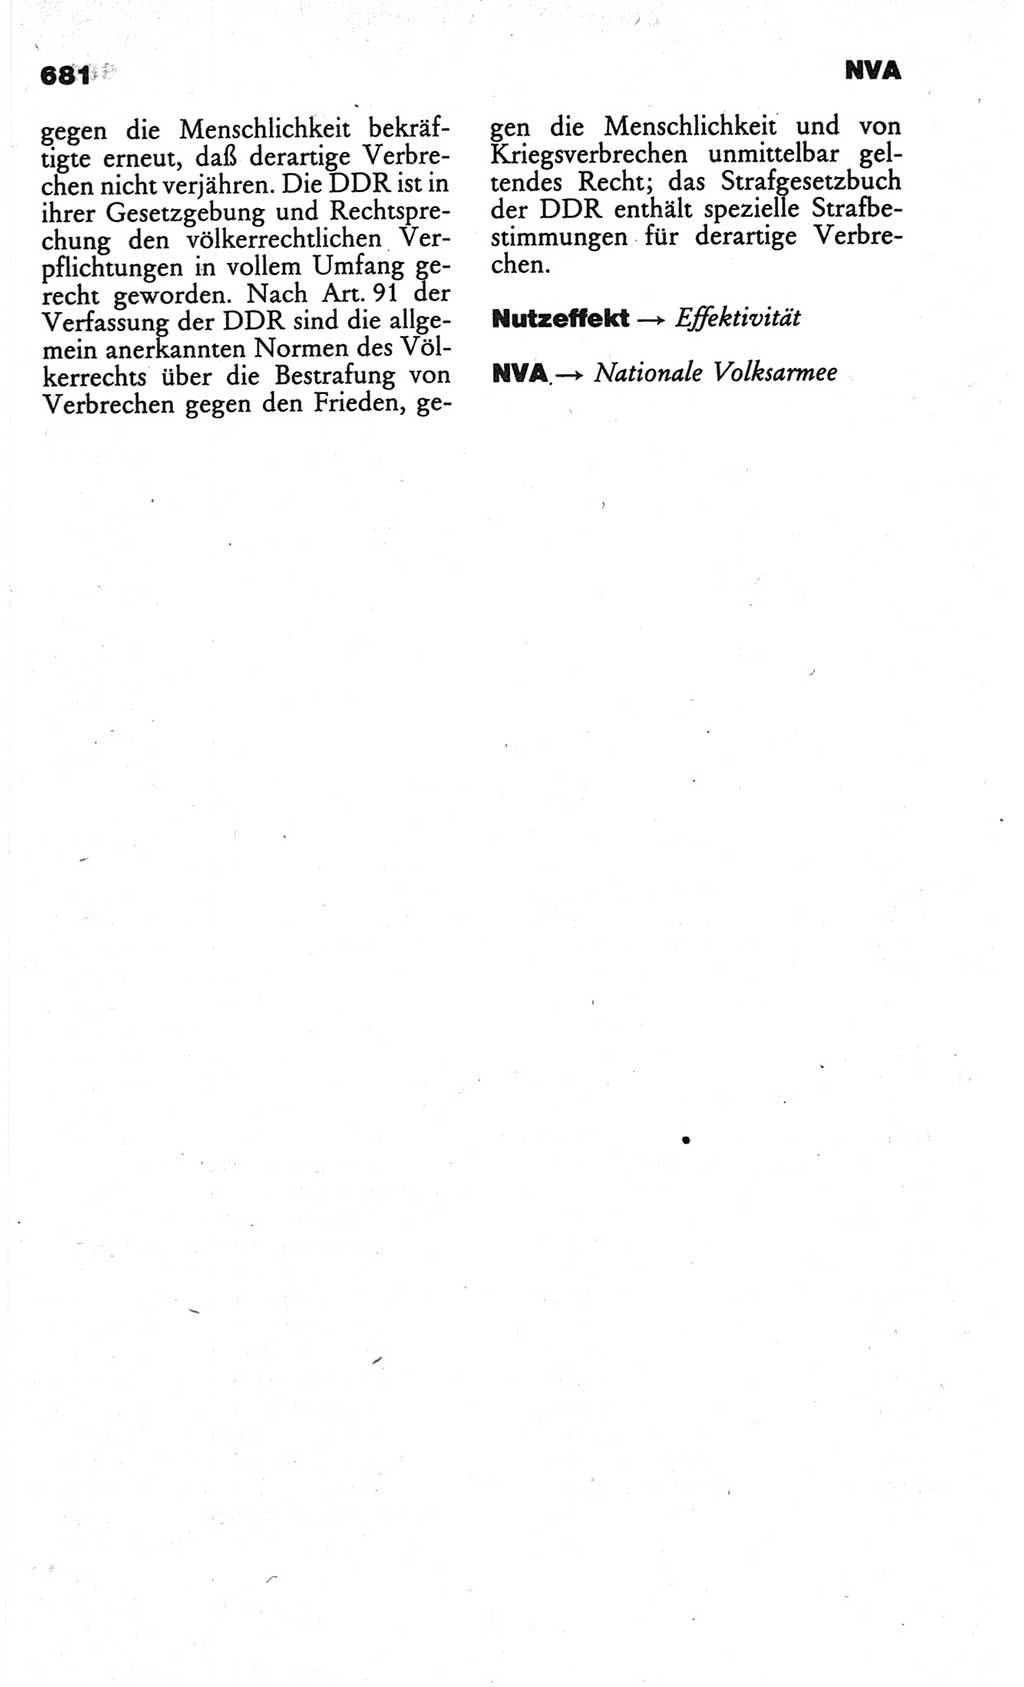 Kleines politisches Wörterbuch [Deutsche Demokratische Republik (DDR)] 1986, Seite 681 (Kl. pol. Wb. DDR 1986, S. 681)